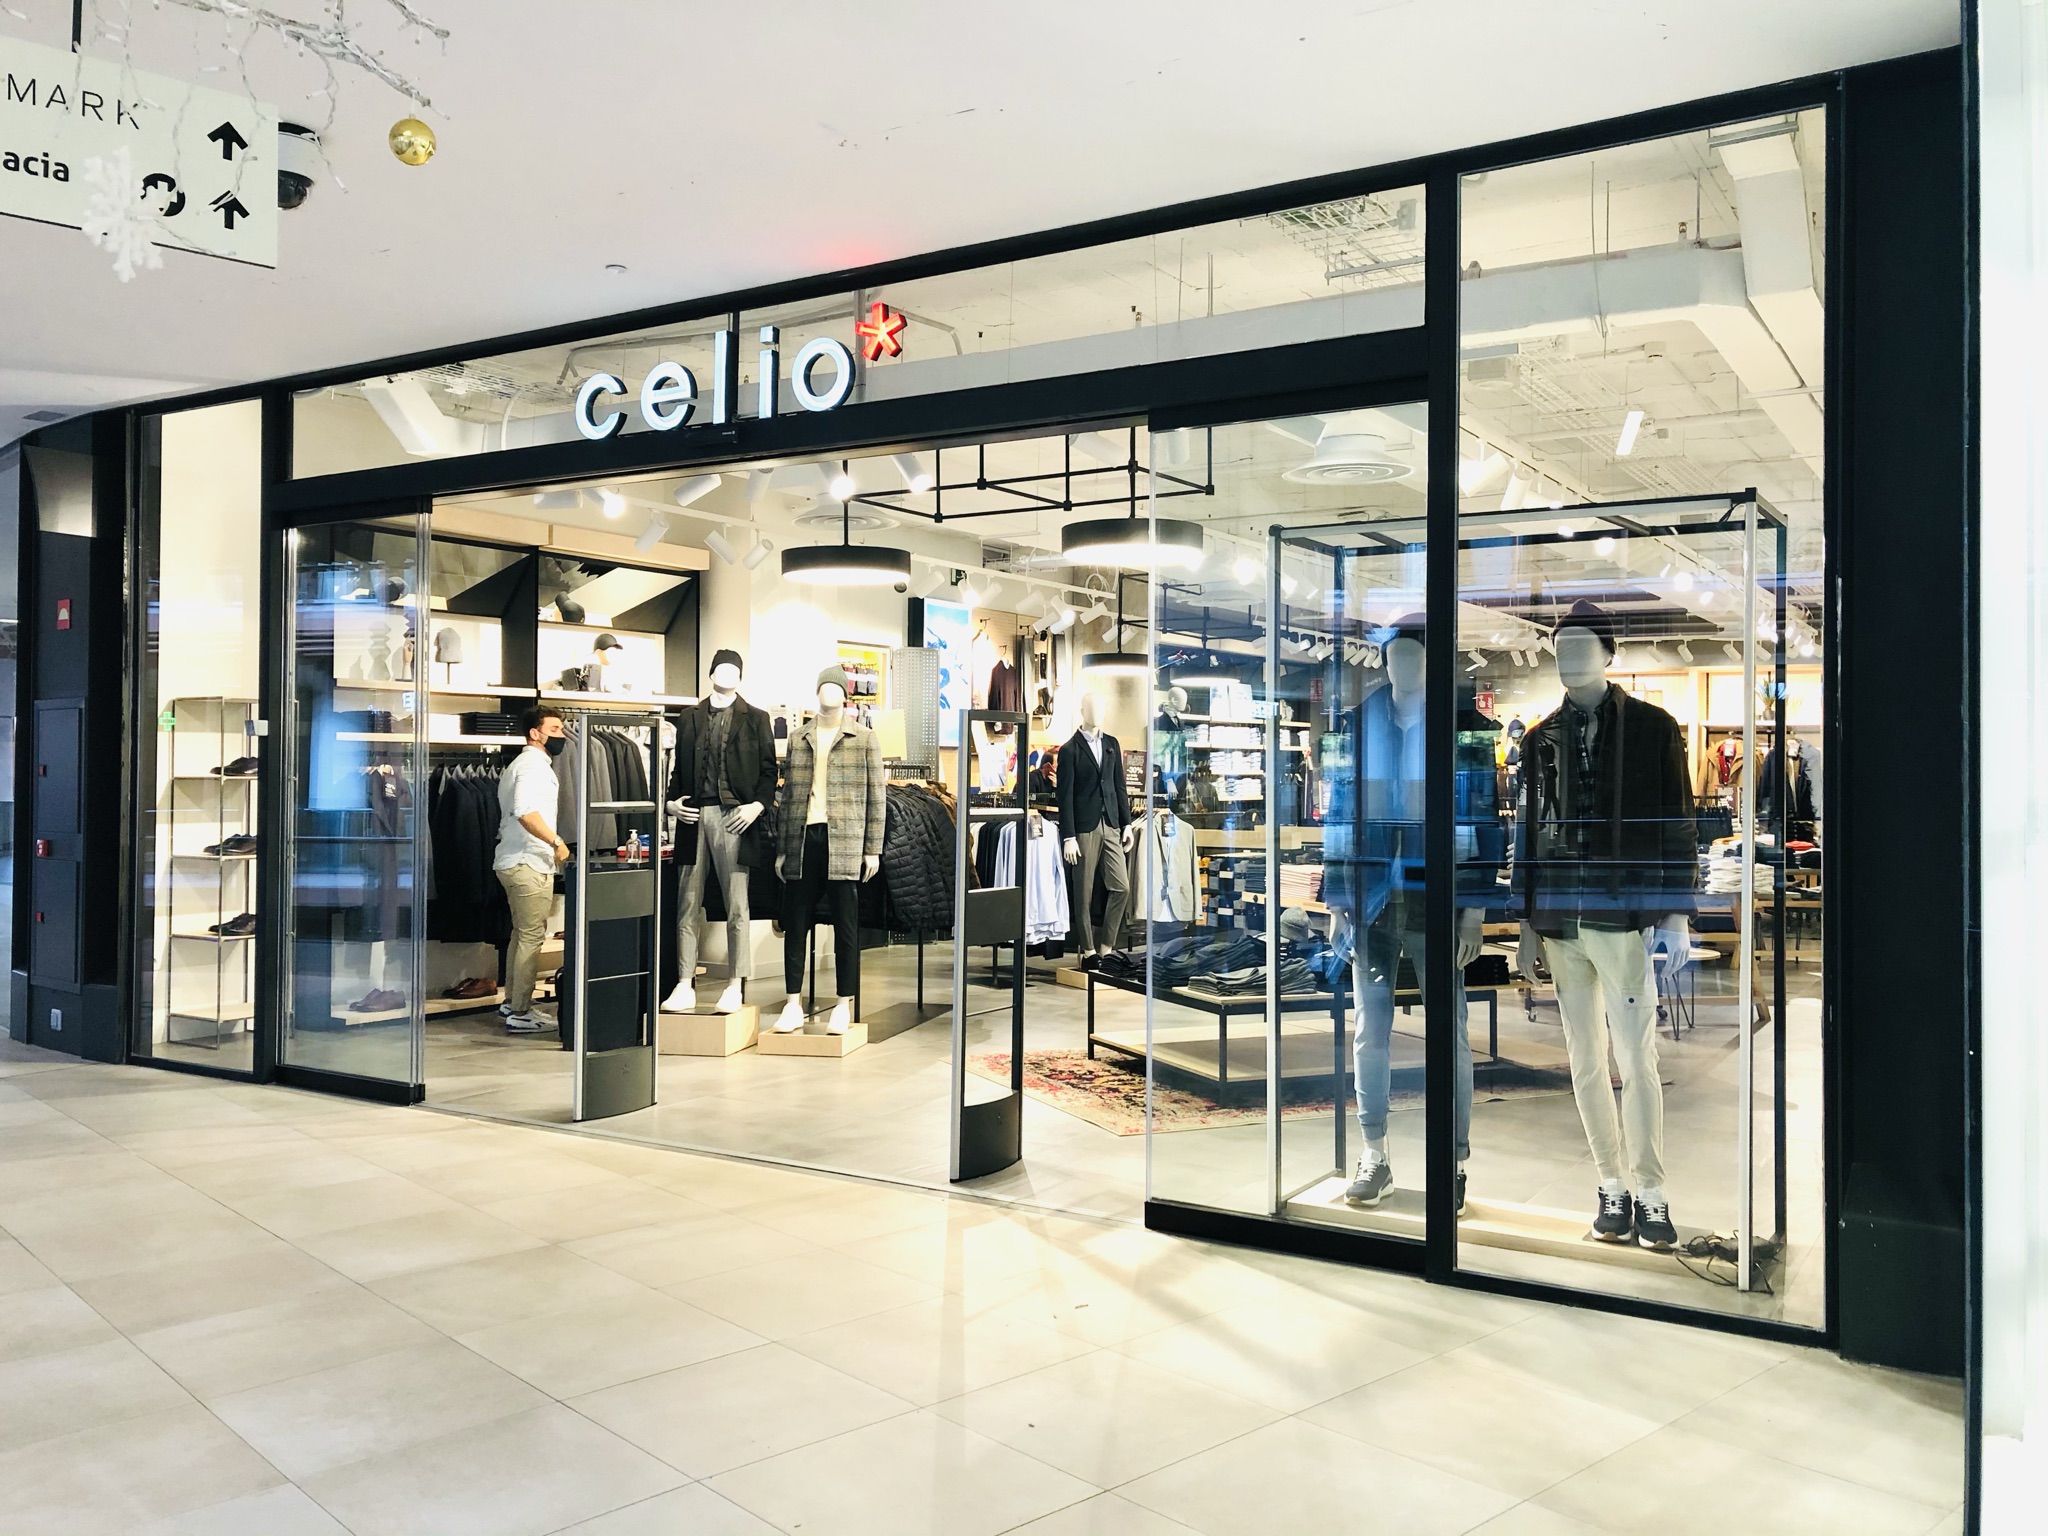 Celio abre una nueva tienda en el Centro Comercial TORRE SEVILLA